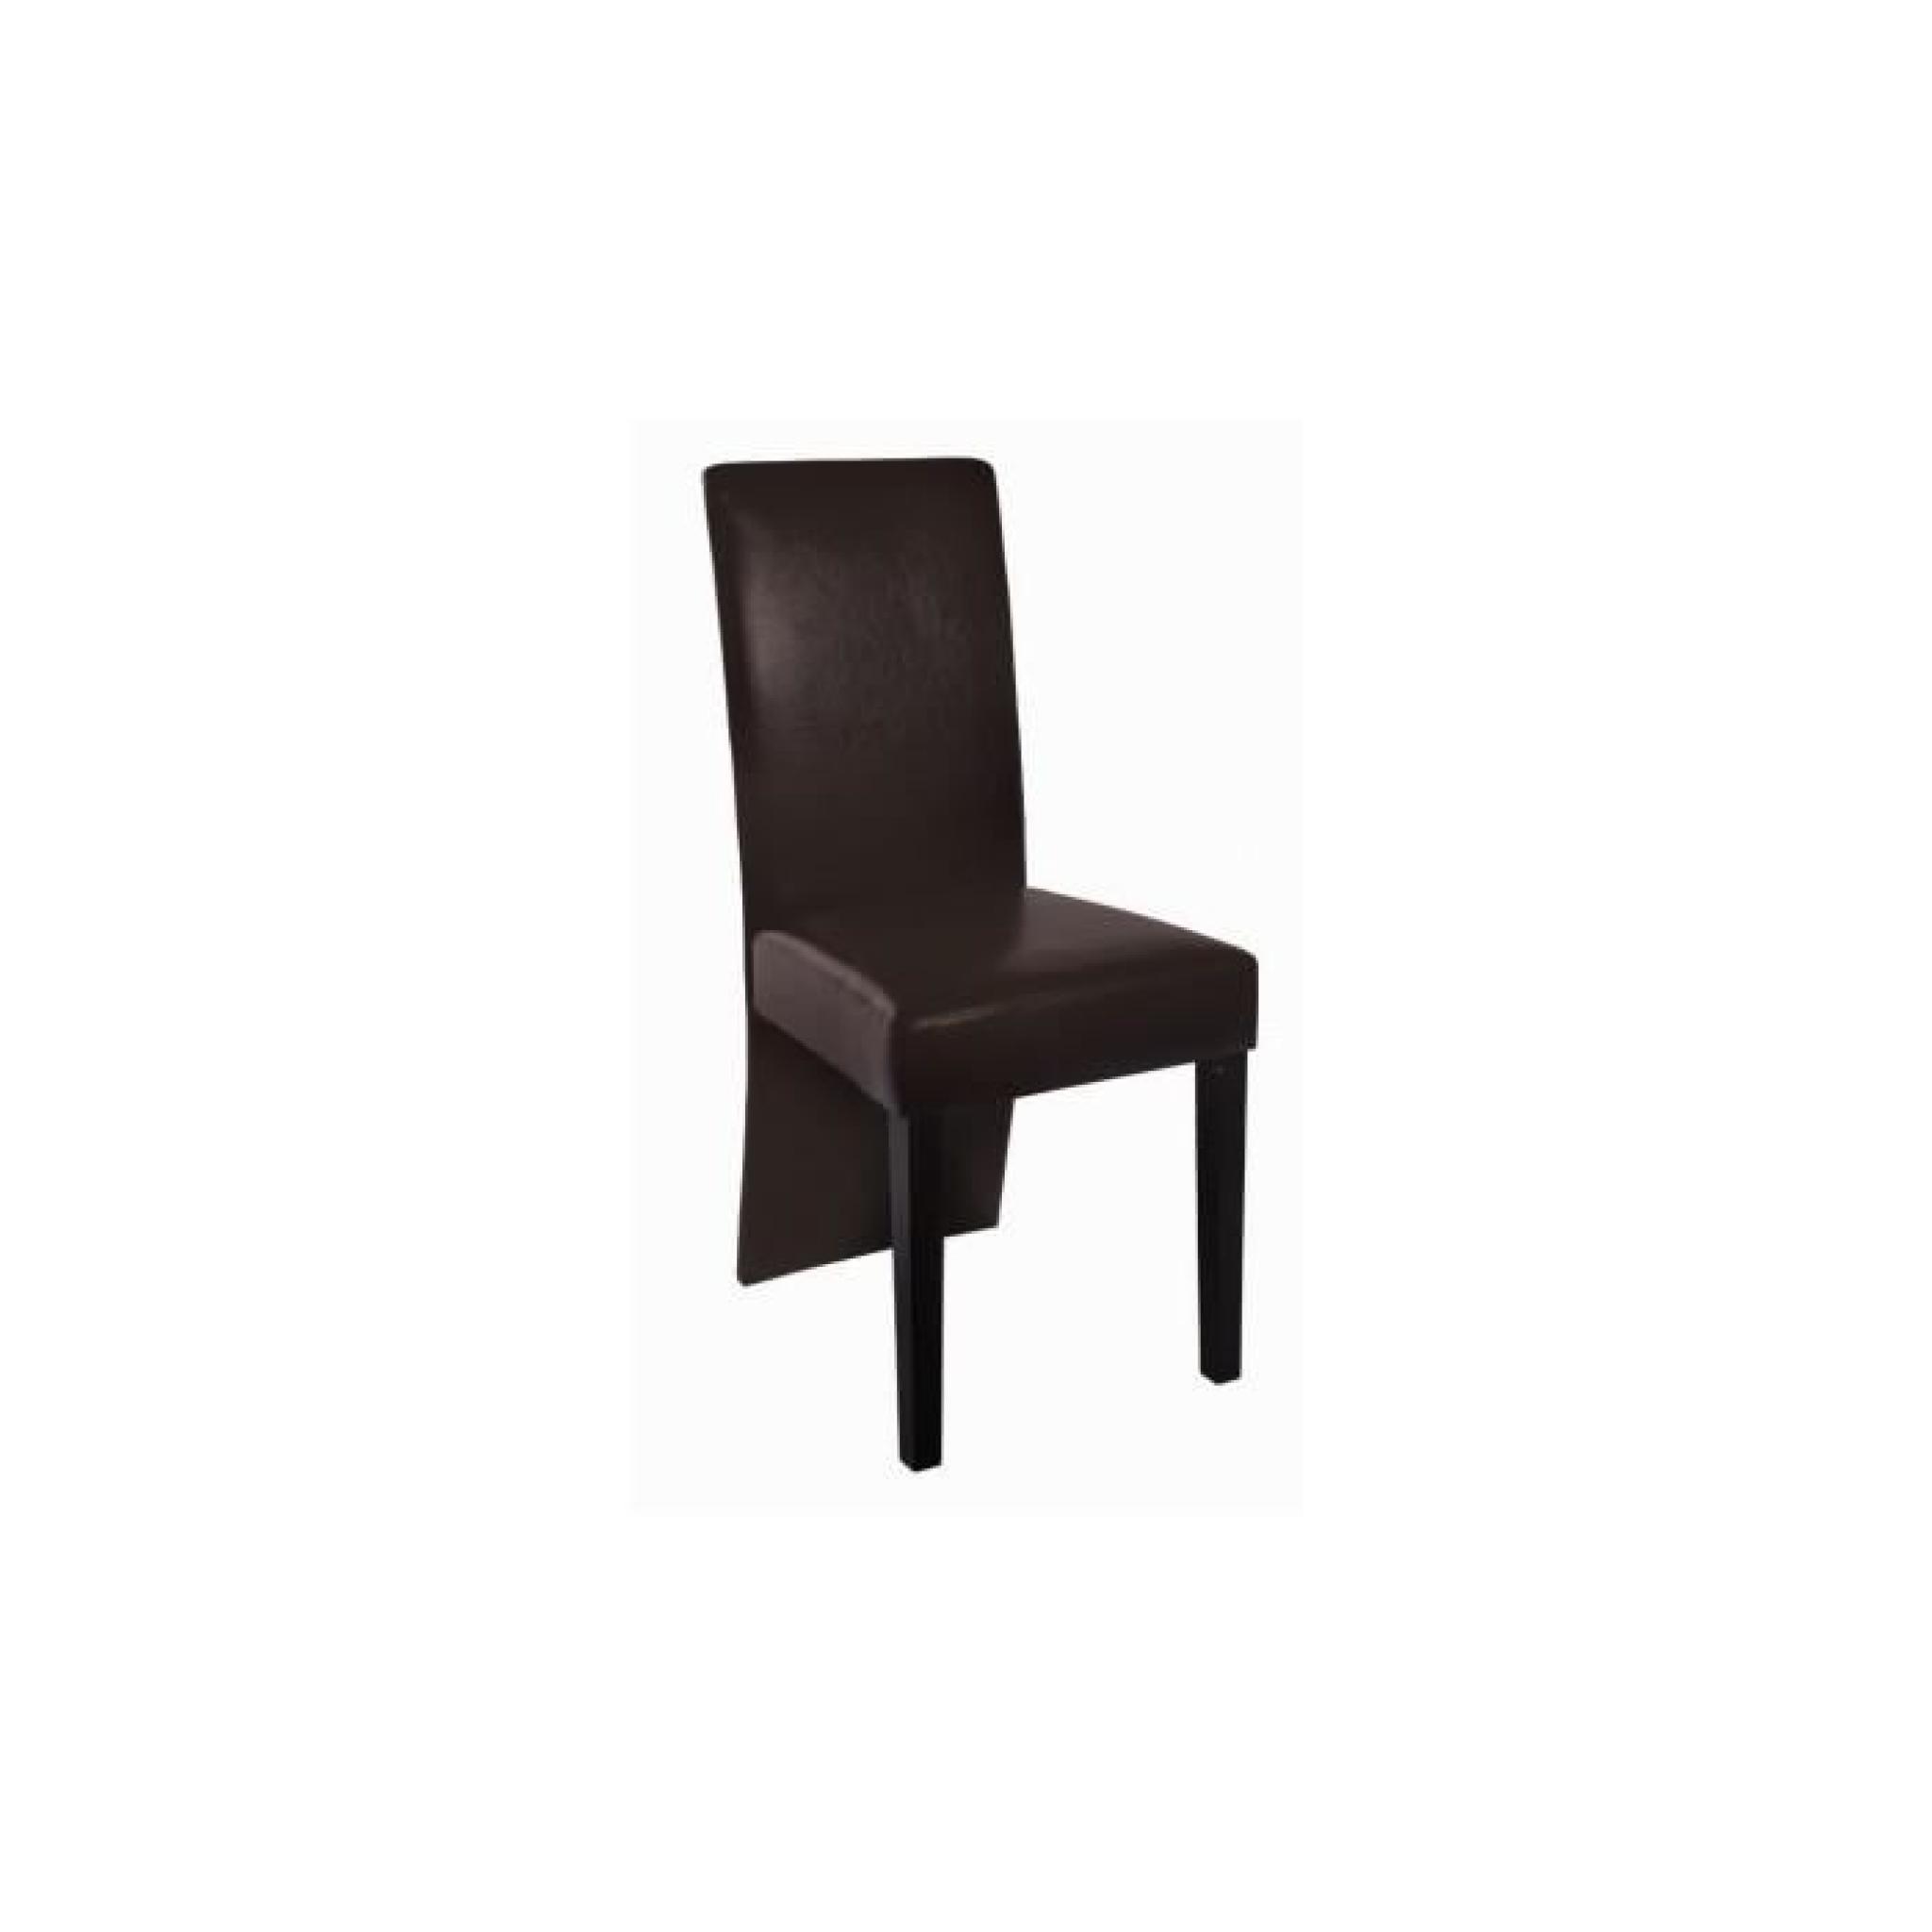 Chaise design bois marron (lot de 6) 93 x 43 x 53 cm pas cher